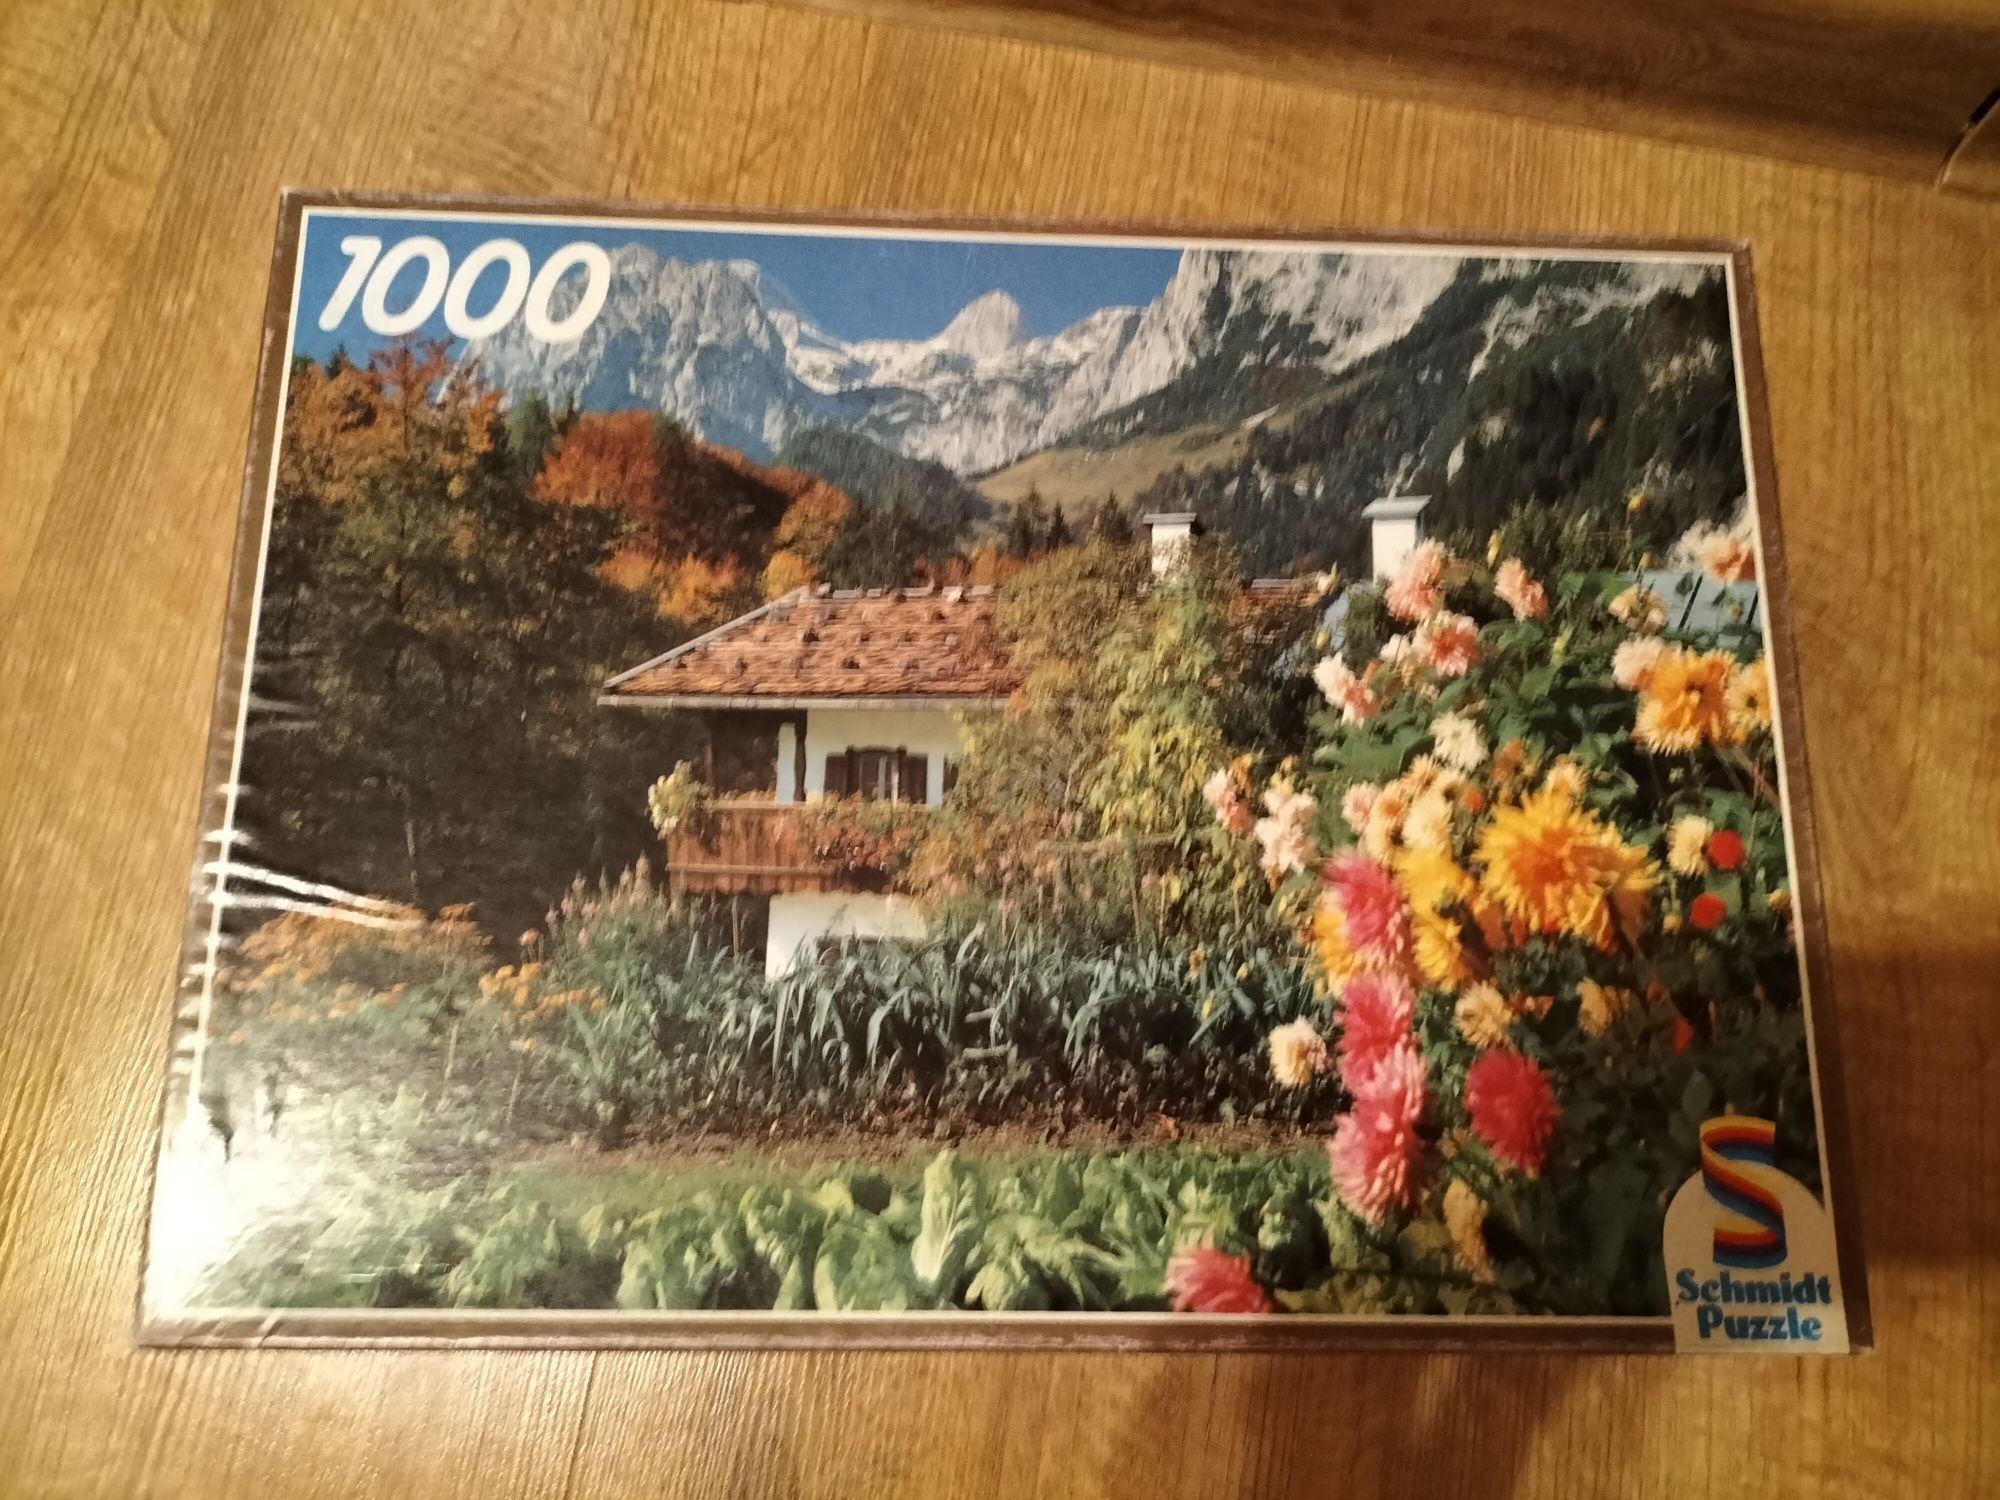 Schmidt Puzzle 1000 puzli